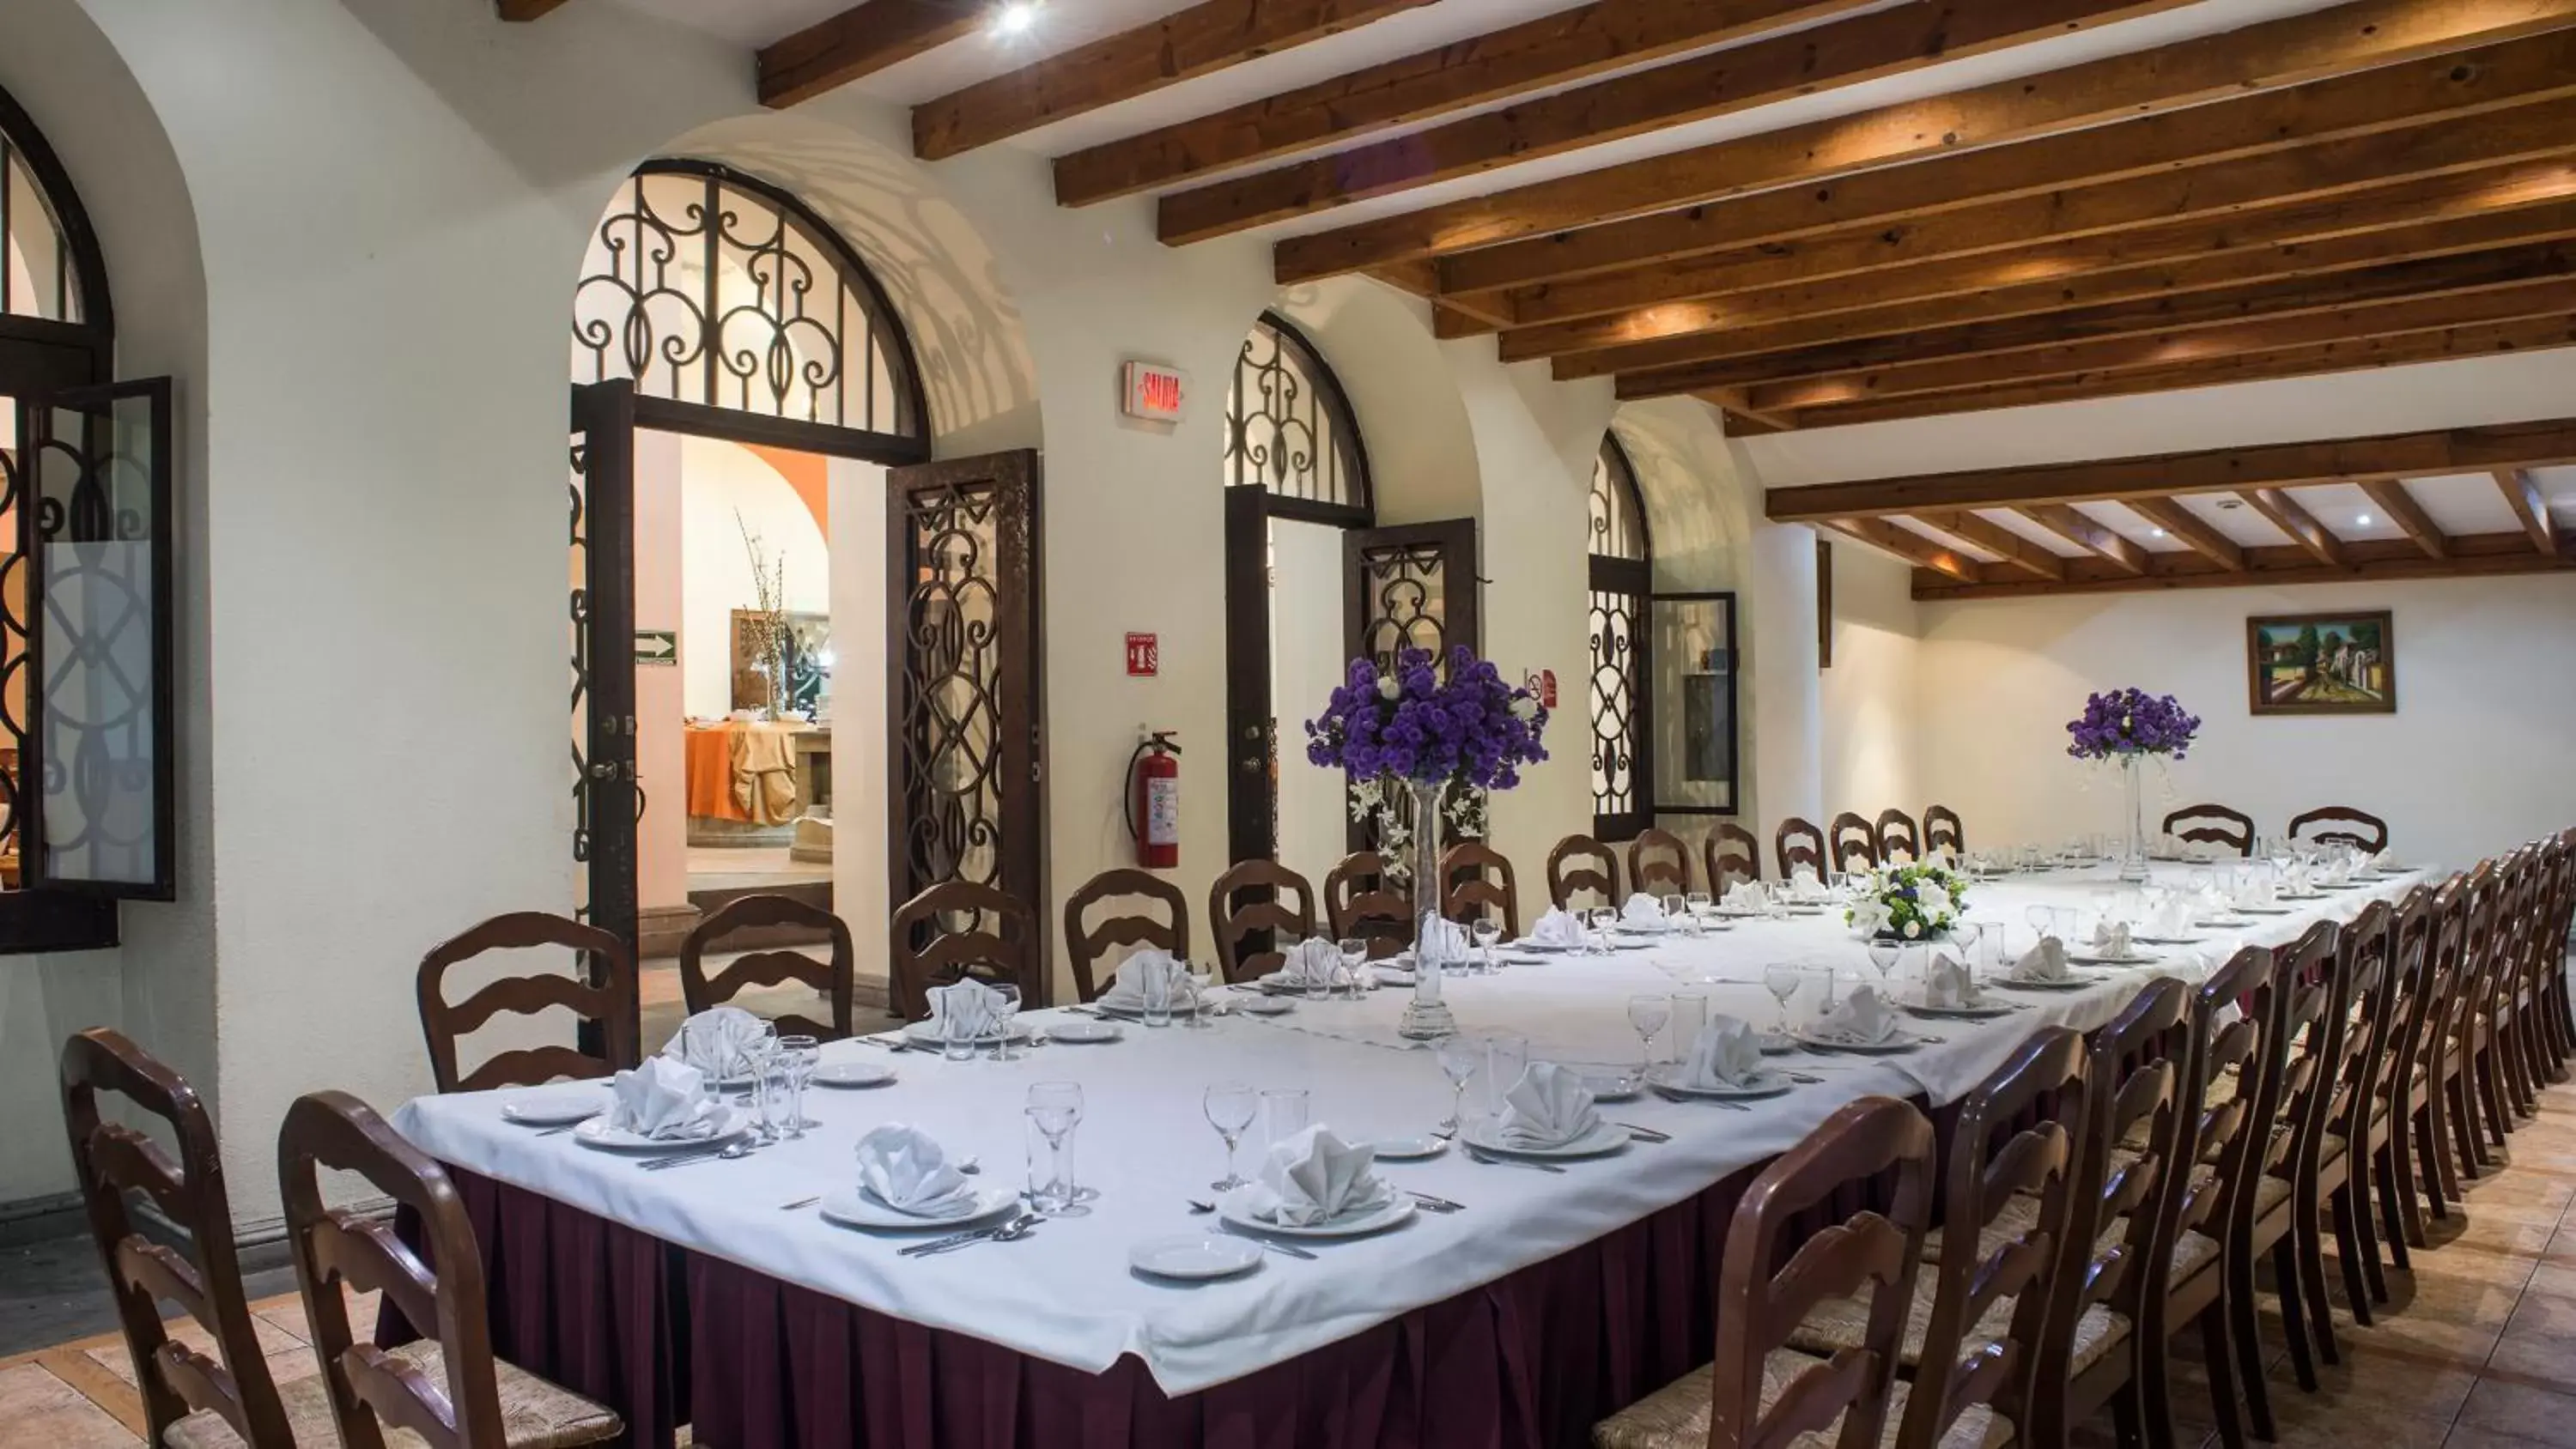 Meeting/conference room, Restaurant/Places to Eat in Ramada by Wyndham Ciudad de Mexico Perinorte